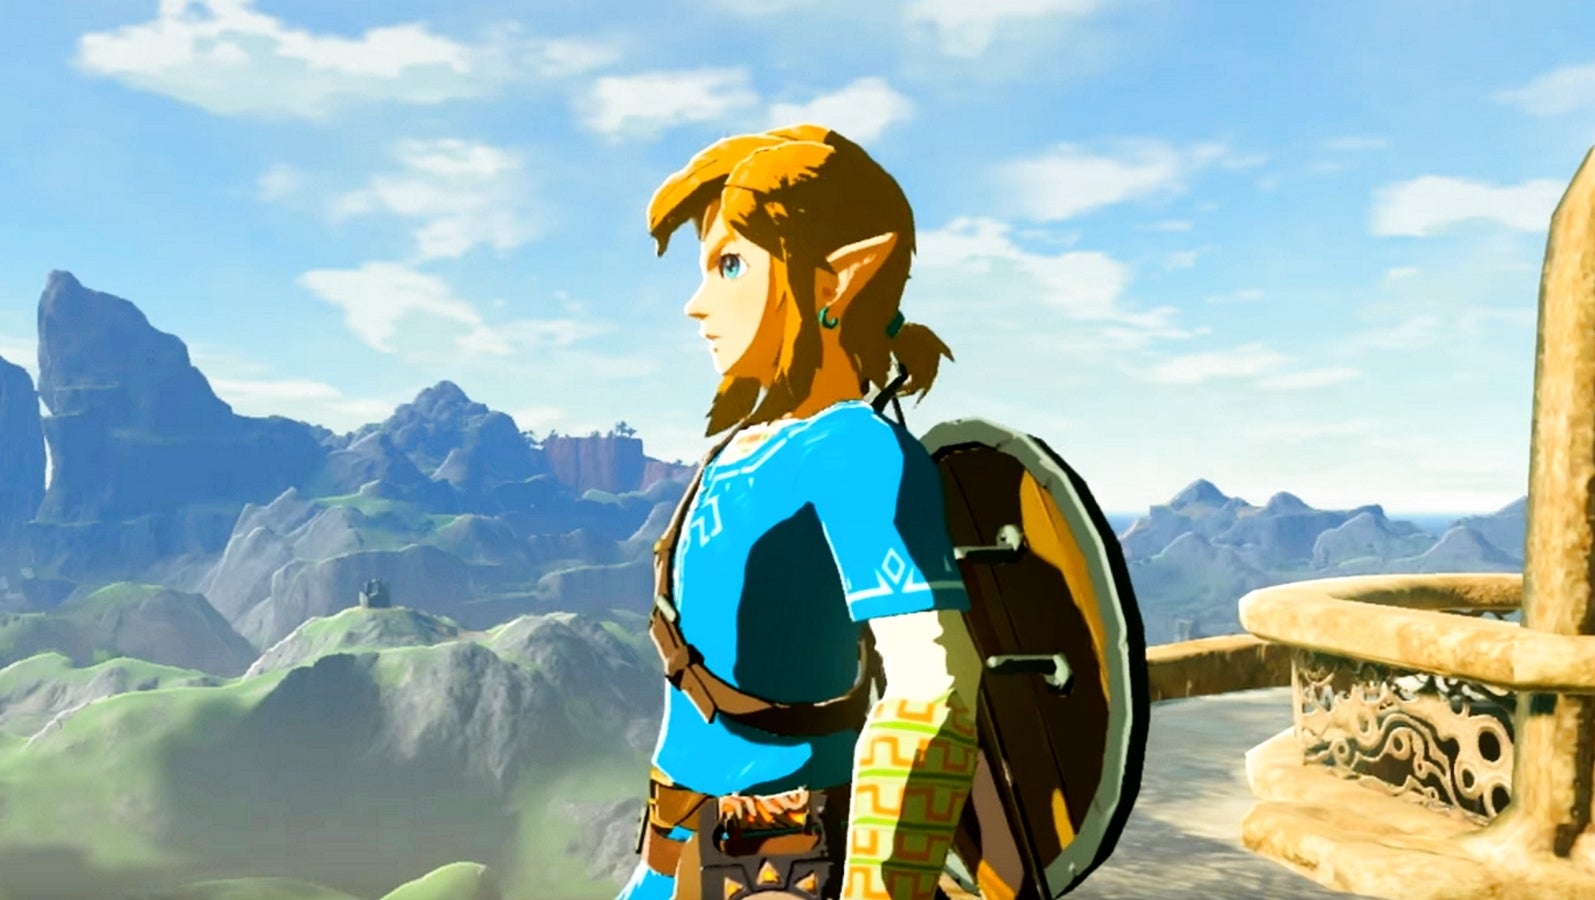 Bilder zu Chinese in Japan verhaftet, weil er modifizierte Spielstände für Zelda: Breath of the Wild verkaufte